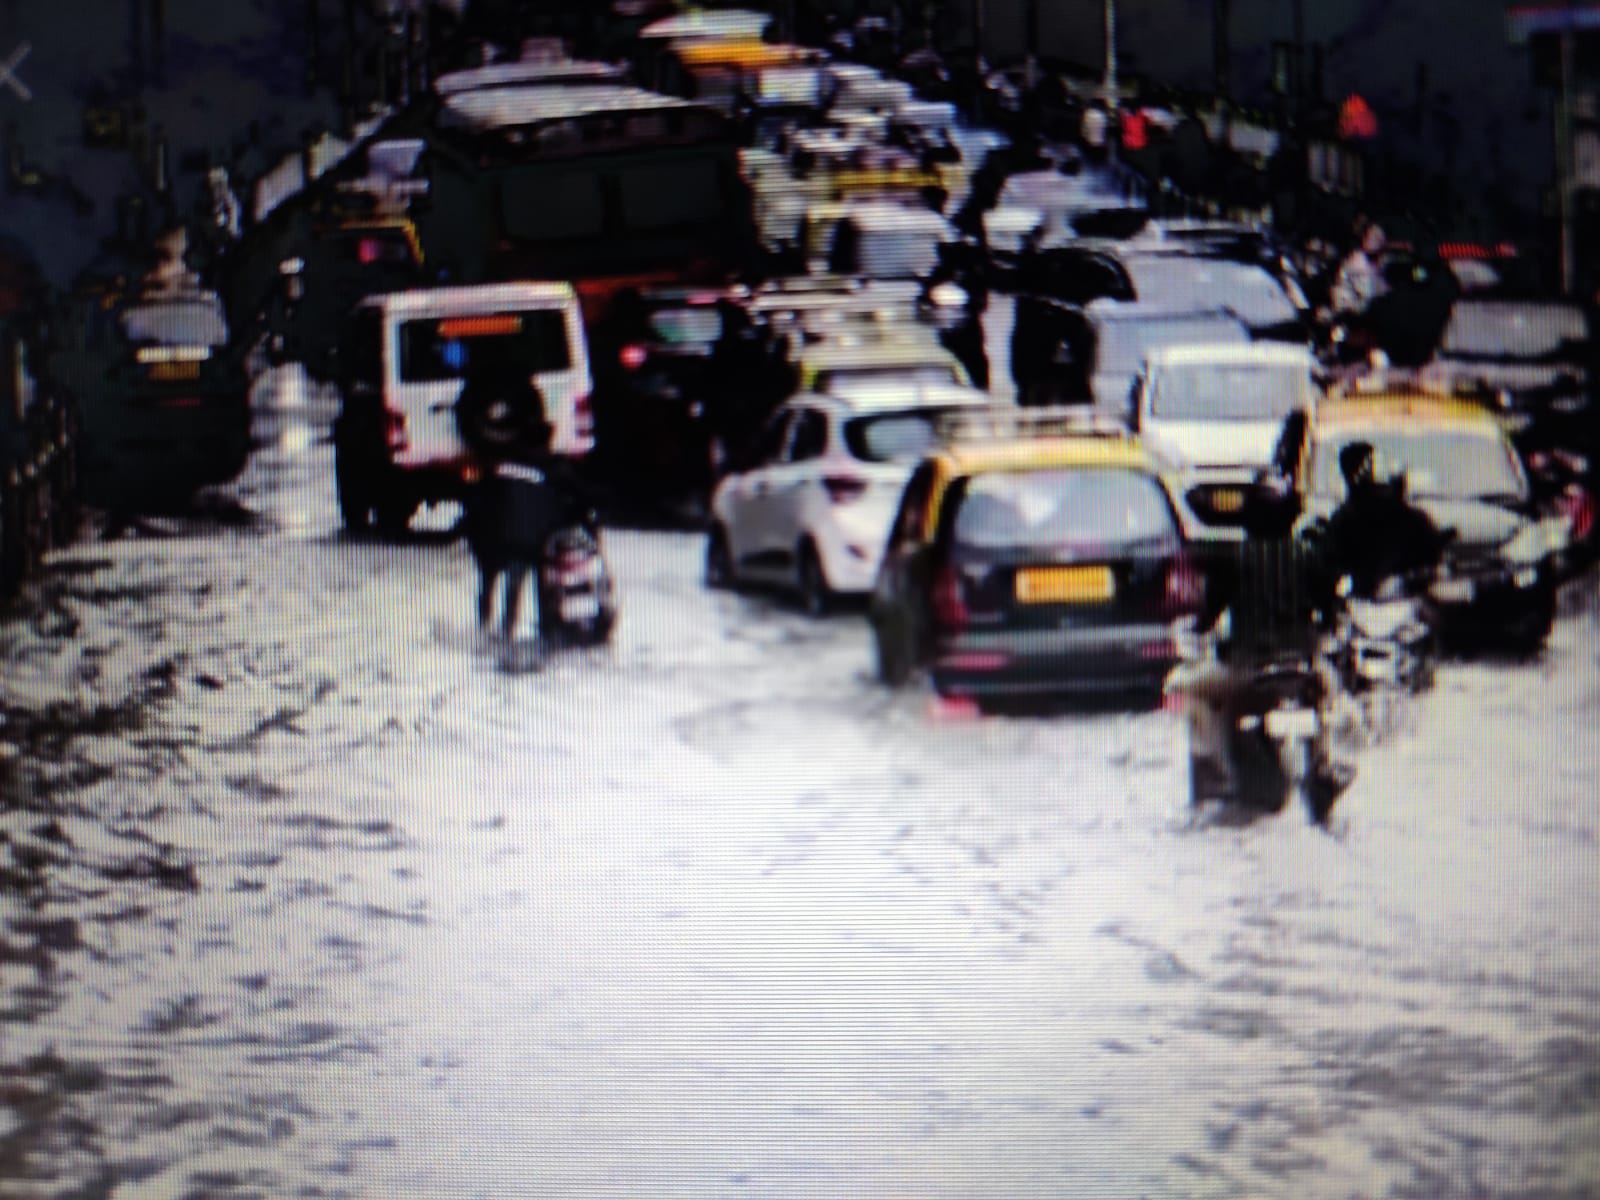 भारी बारिश के कारण मुम्बई एवं आसपास के क्षेत्रों में जनजीवन प्रभावित